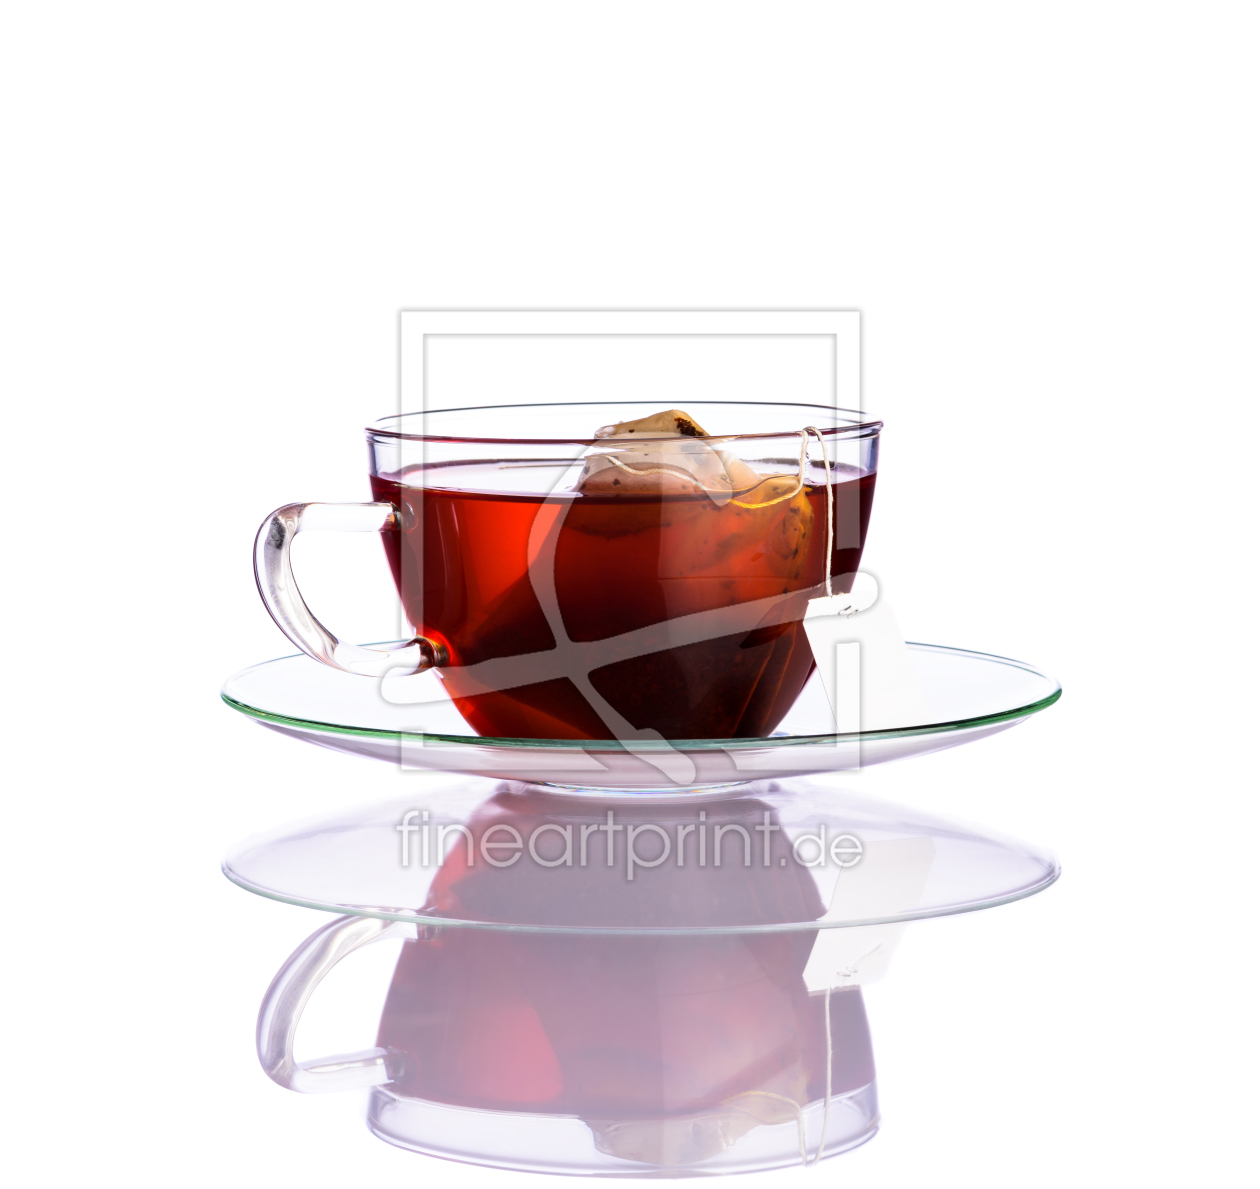 Bild-Nr.: 11917893 Tee mit Teebeutel auf Weißem Hintergrund erstellt von xfotostudio